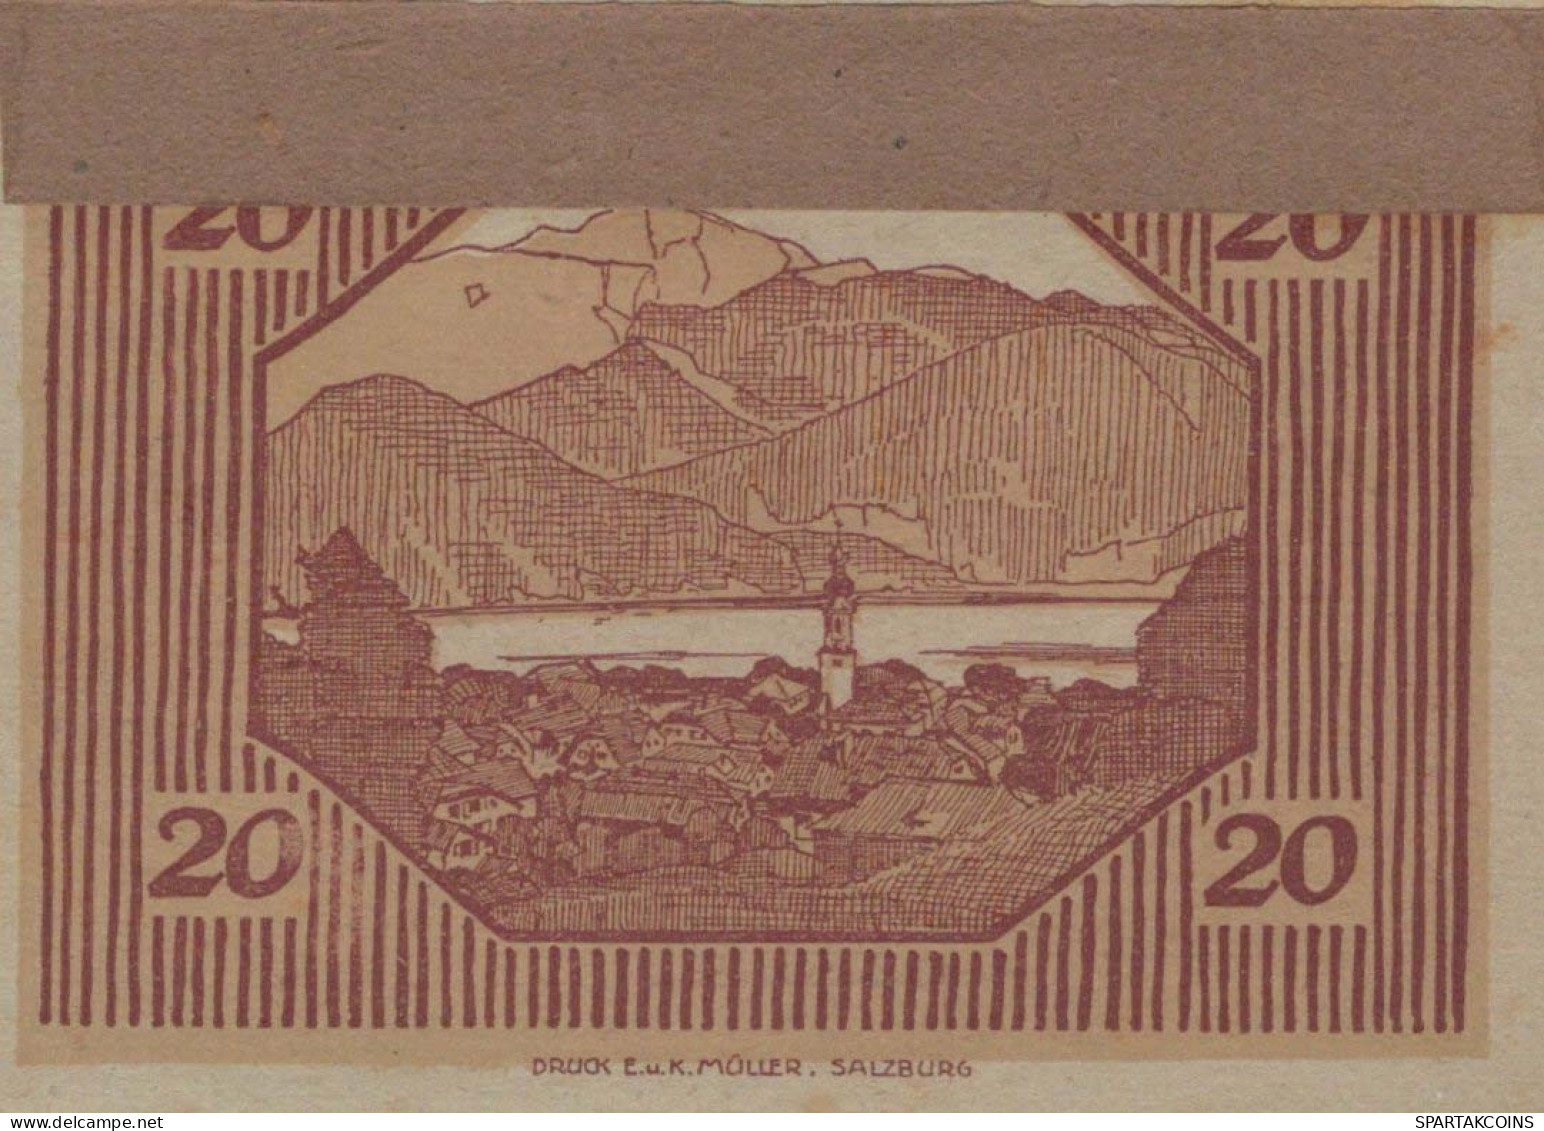 20 HELLER 1920 Stadt SANKT GILGEN Salzburg Österreich Notgeld Banknote #PI278 - Lokale Ausgaben